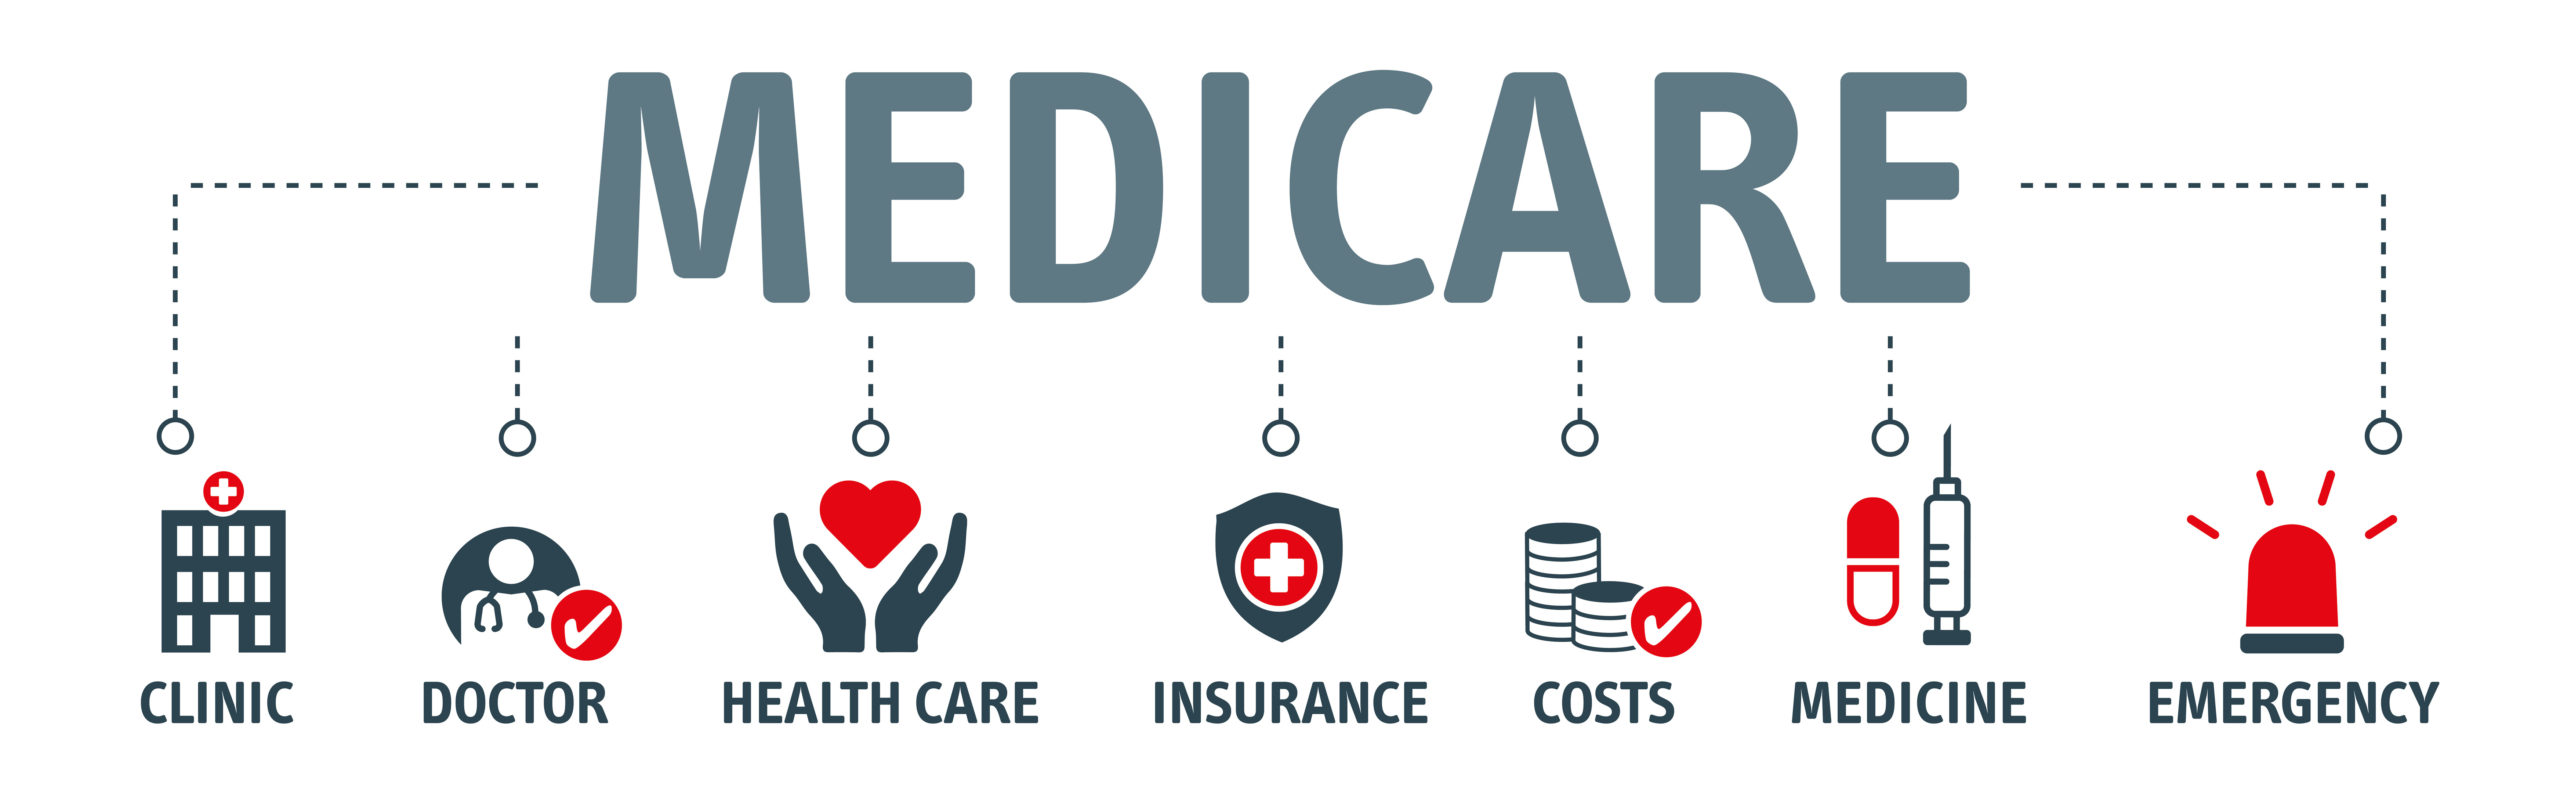 Banner Medicare Vector Illustration Concept